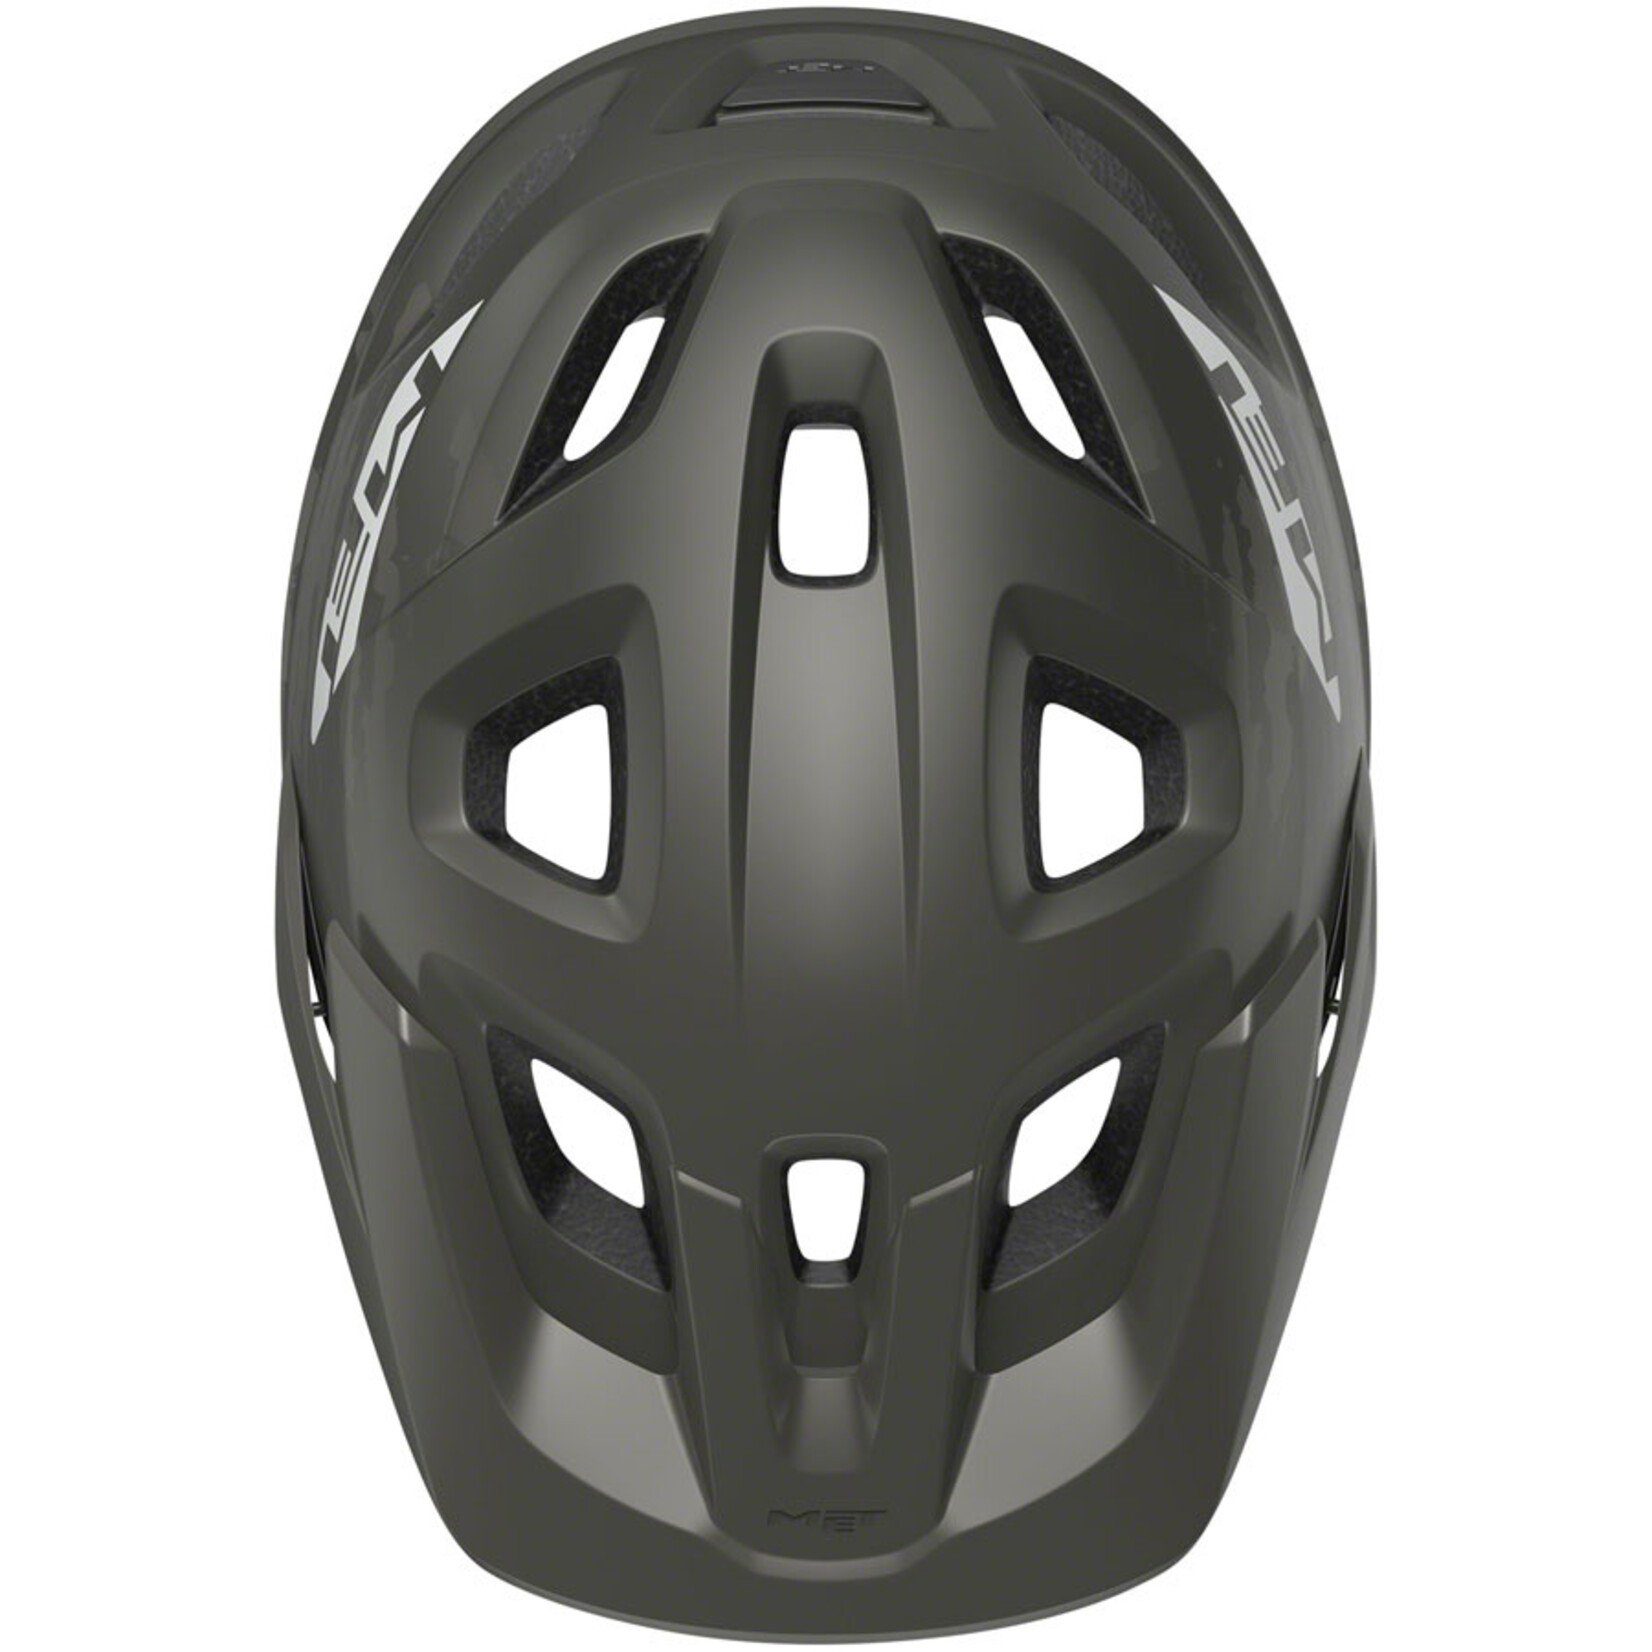 MET Helmets MET Echo MIPS Helmet - Titanium Metallic, Matte, Large/X-Large